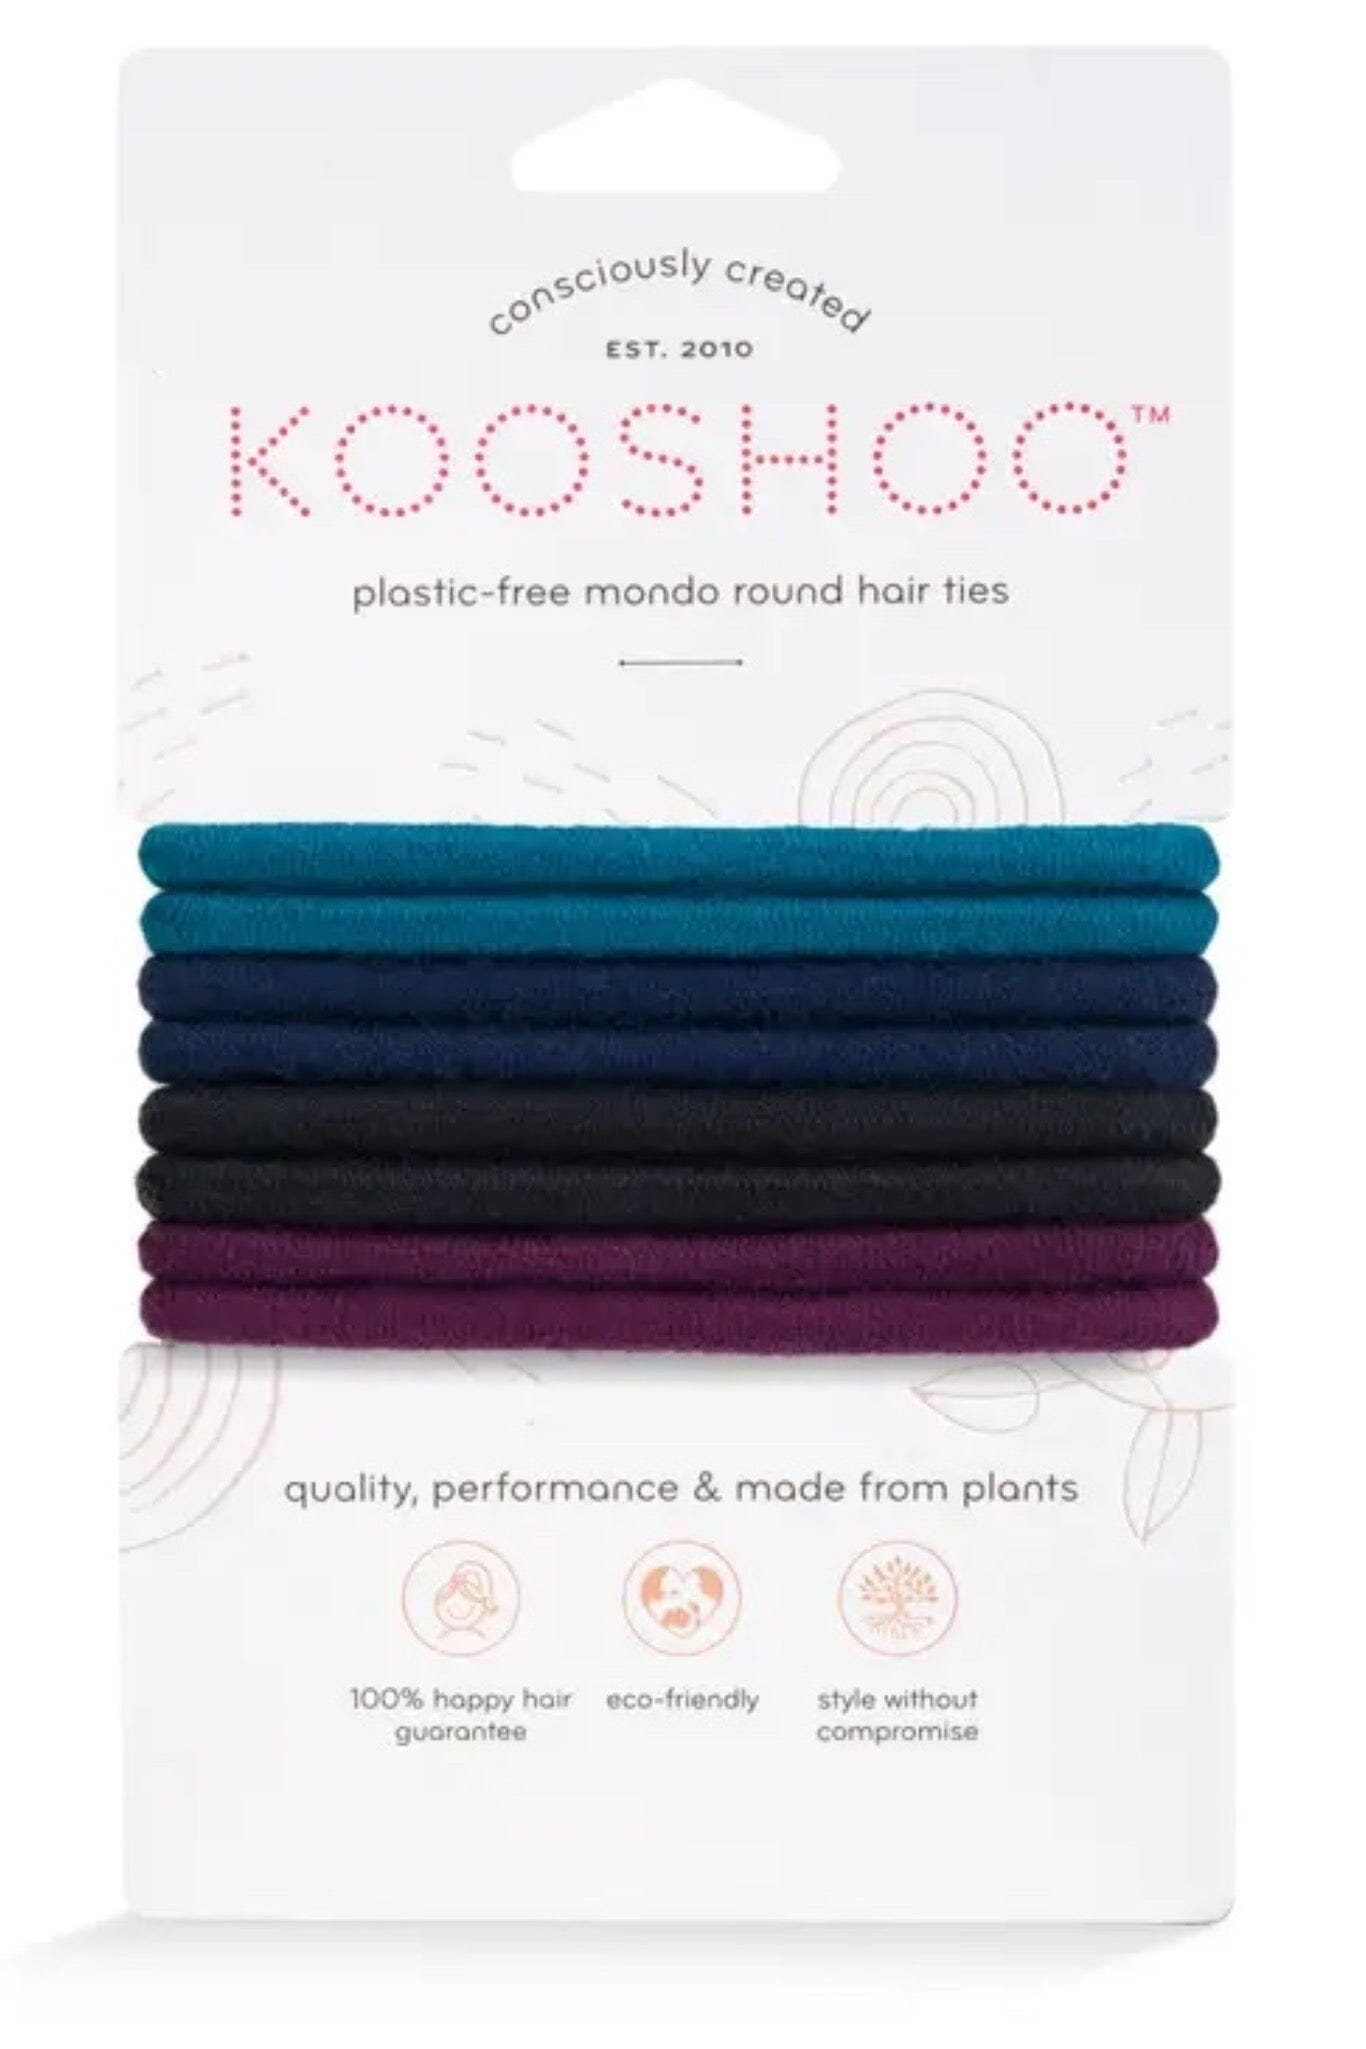 Kooshoo Organic Round Hair Ties - Dark Hues